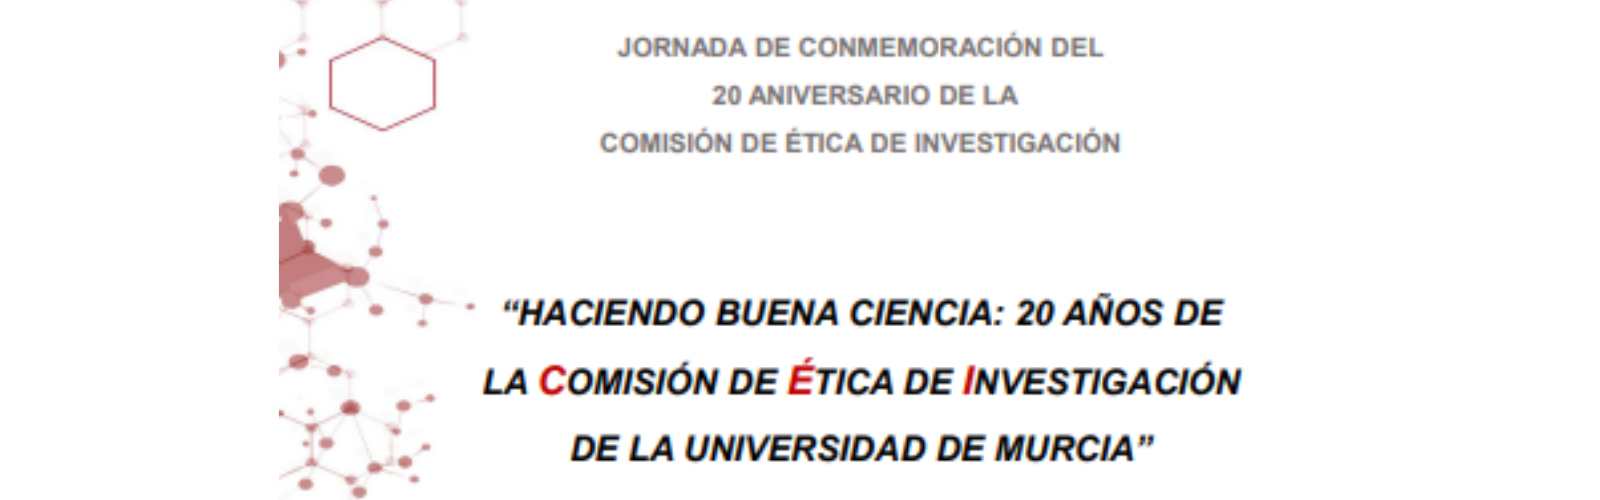 Nota de prensa - La UMU conmemora el vigésimo aniversario de su Comisión de Ética de Investigación